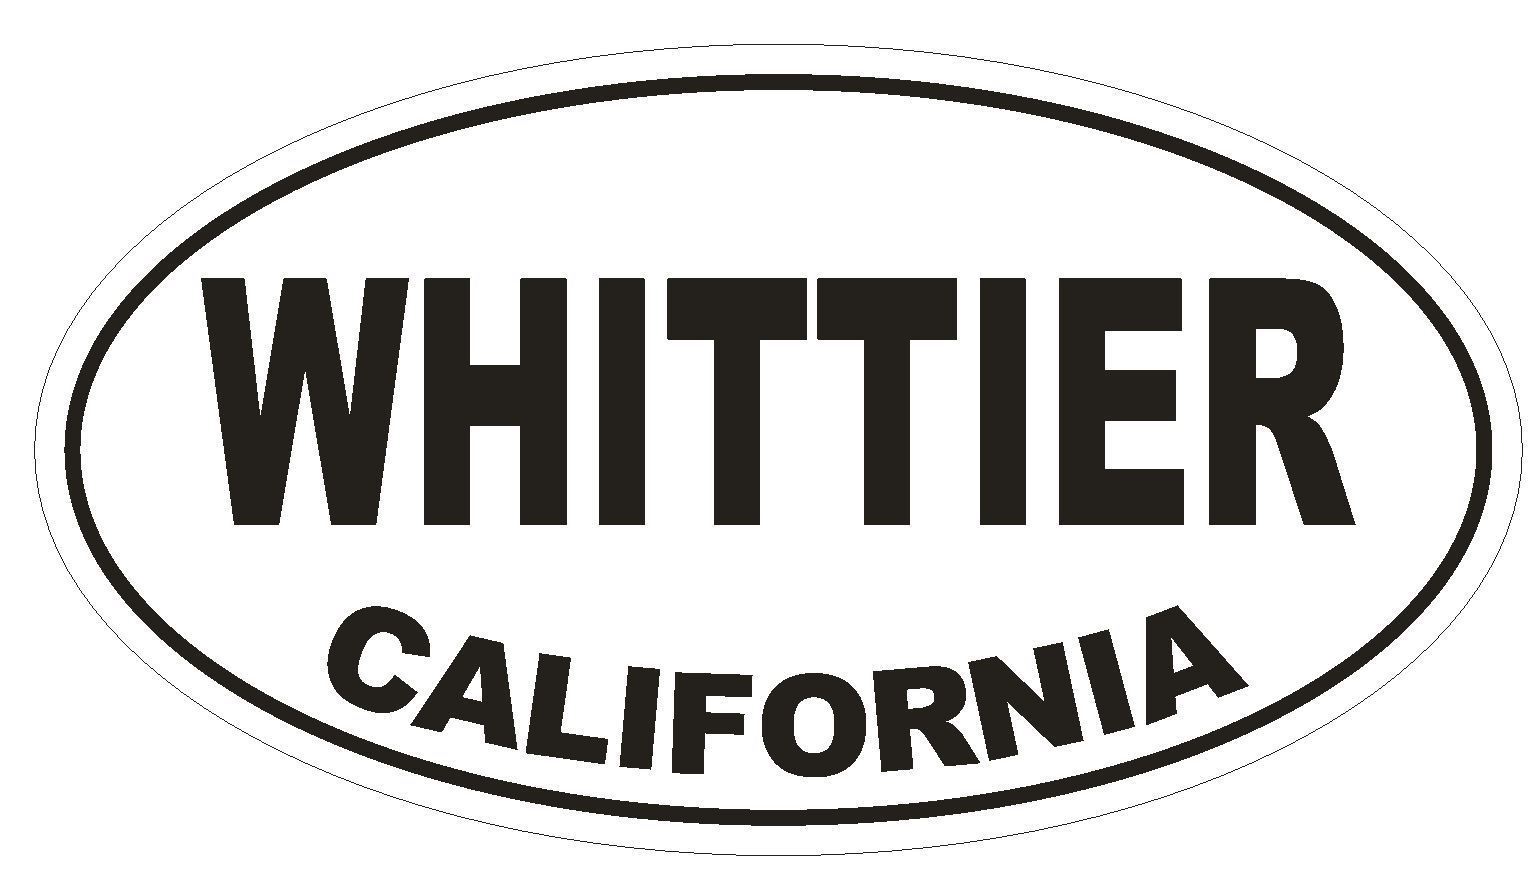 Whittier California Oval Bumper Sticker or Helmet Sticker D2837 Euro Oval - $1.39 - $75.00